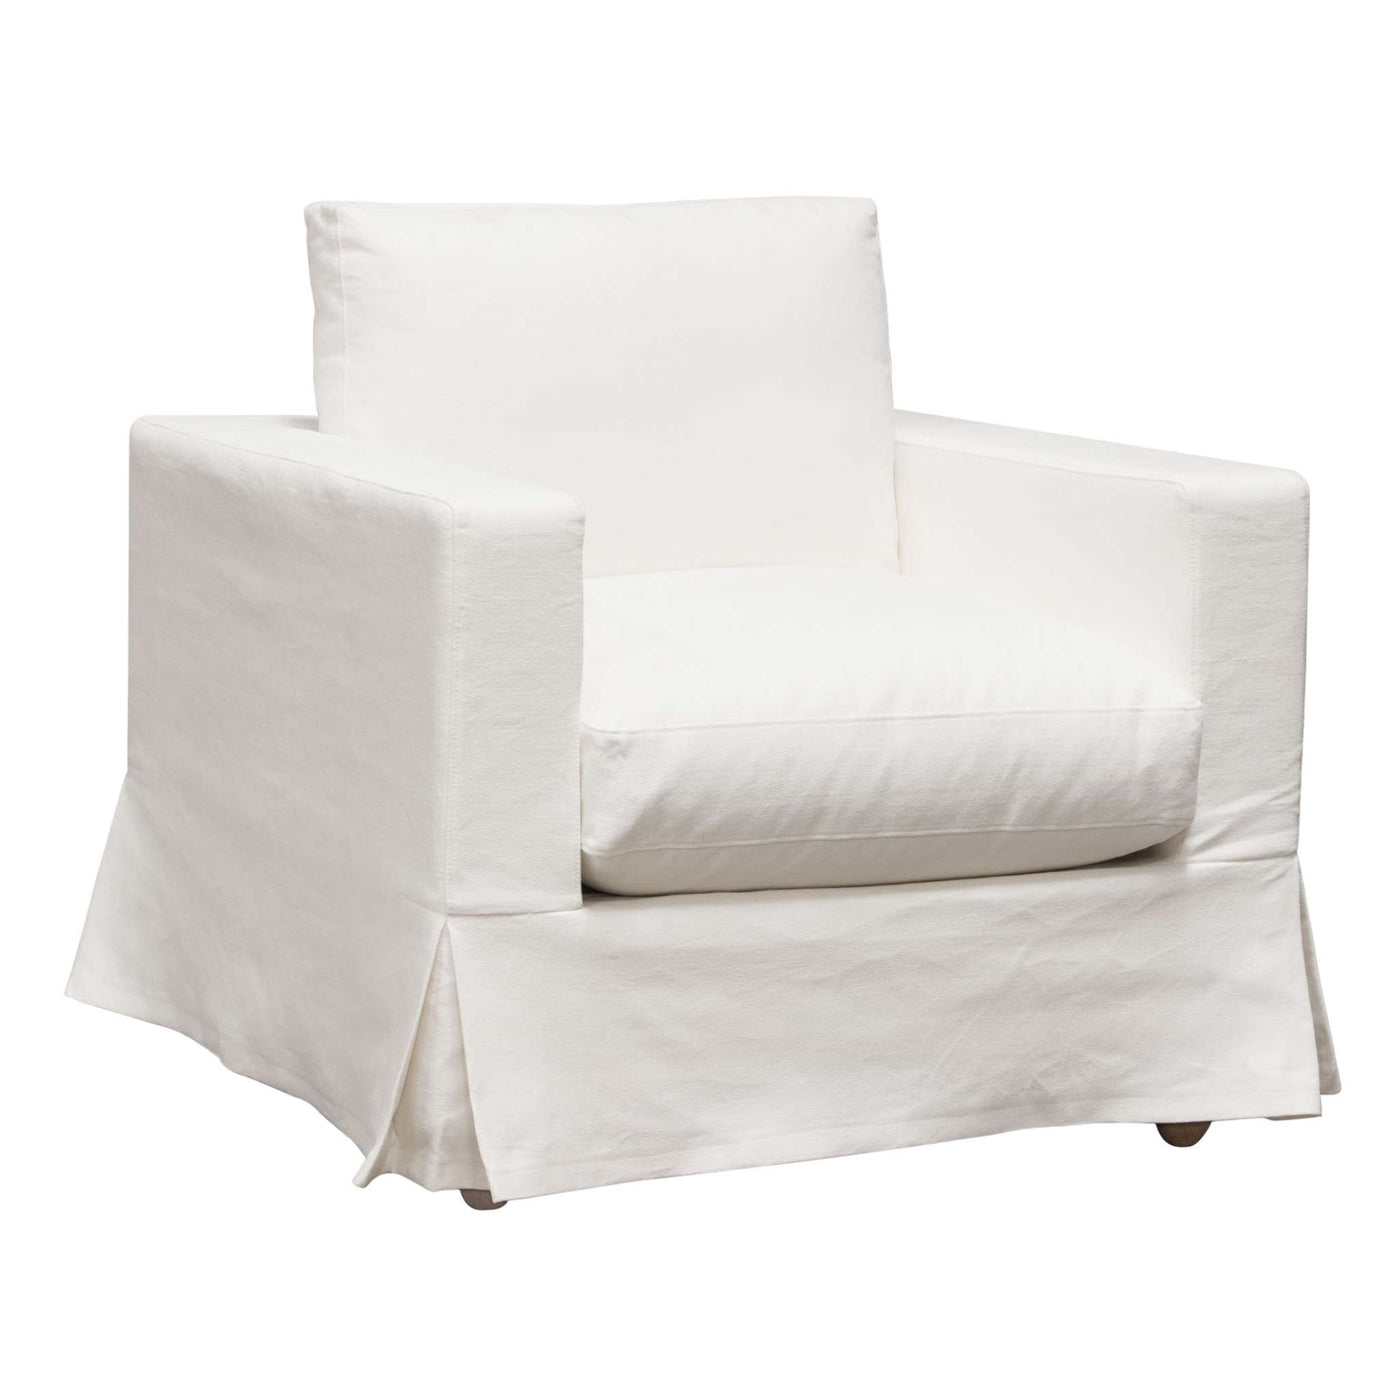 Savannah Slip-Cover Chair in Linen by Diamond Sofa